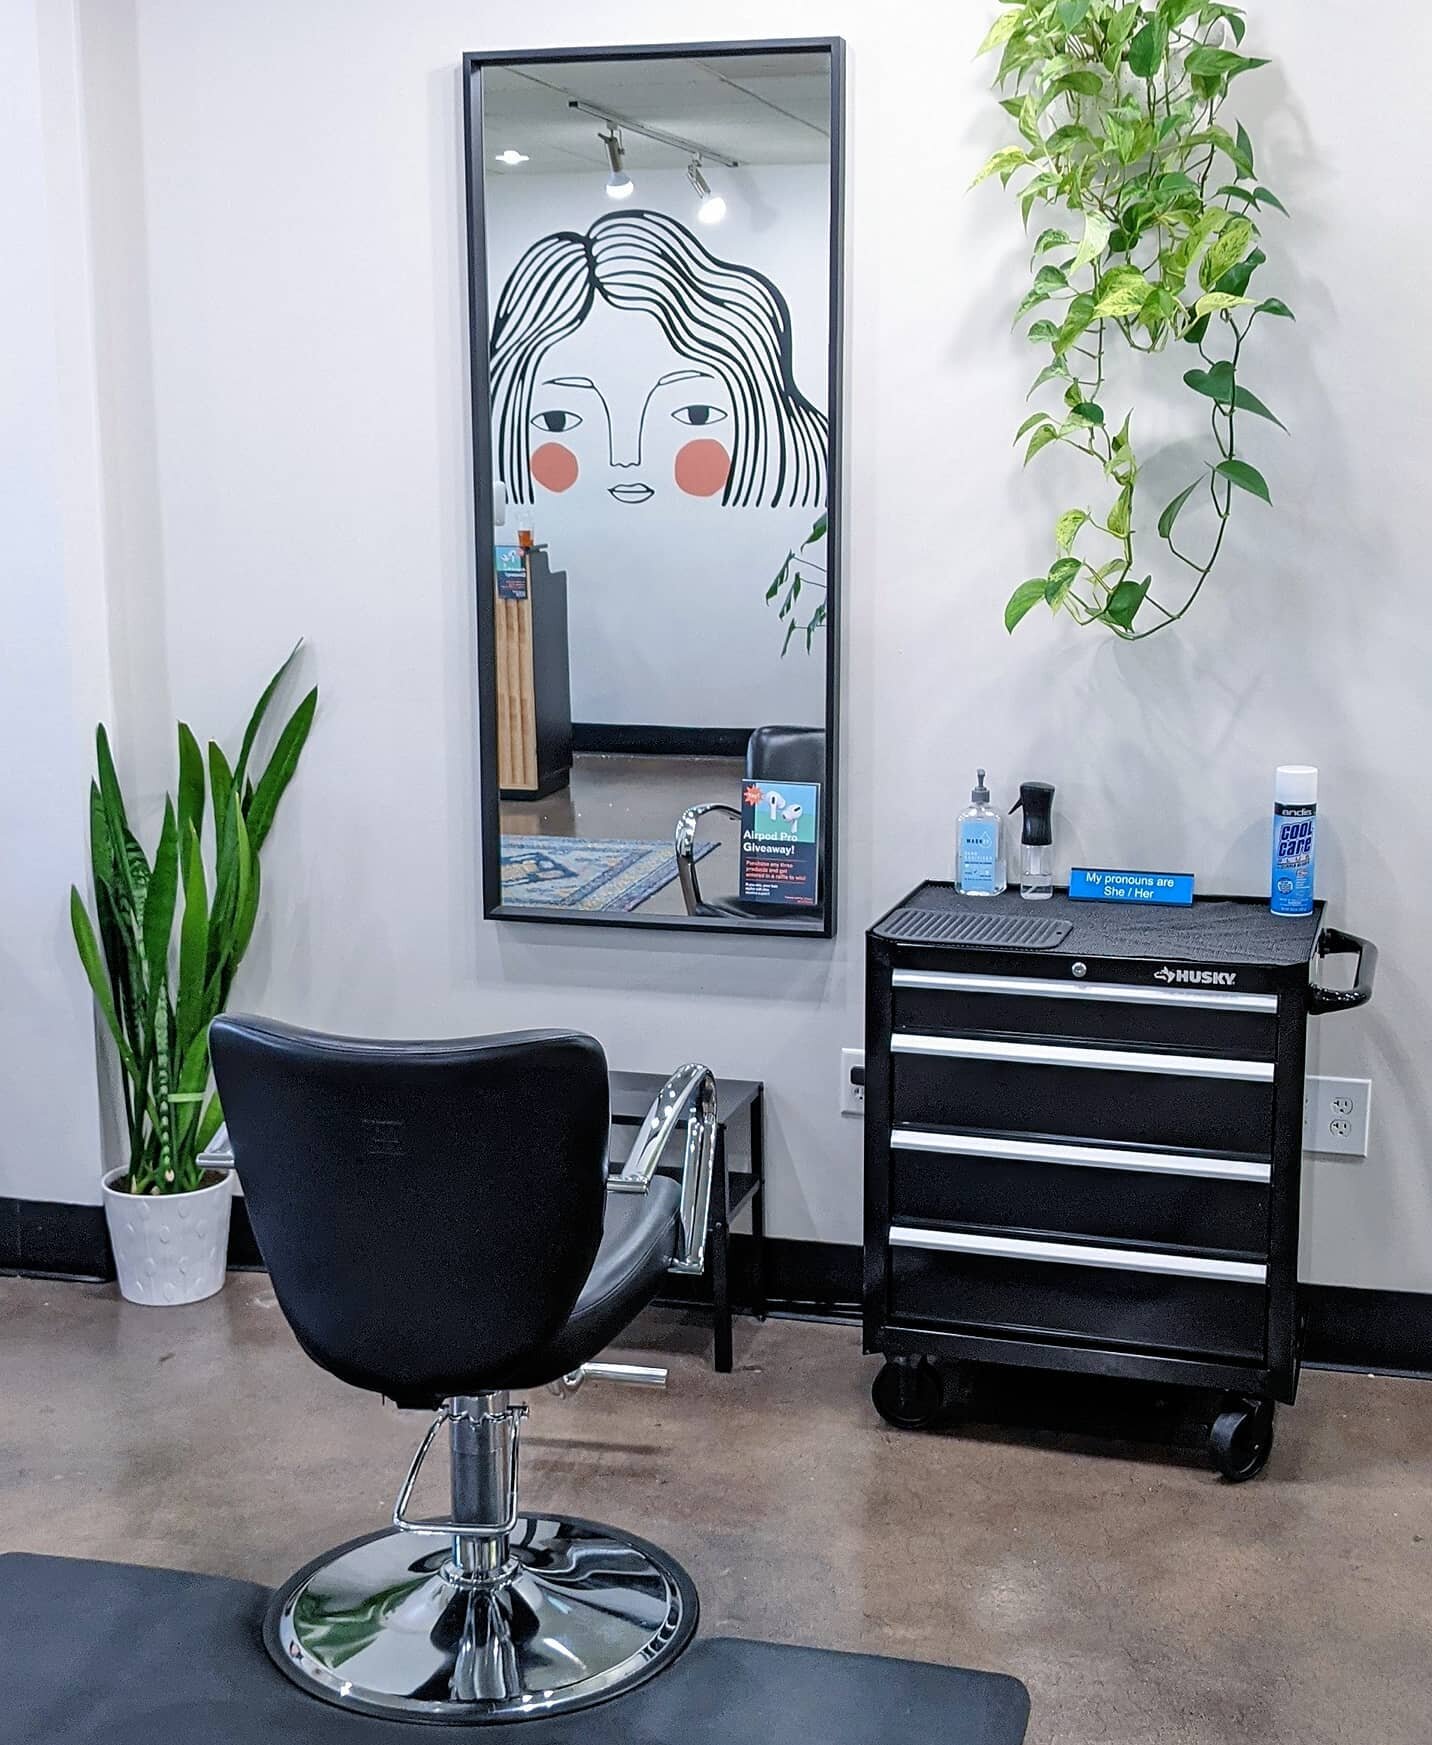 New styling stations are here! 👀
.
#sprucehair #innersense #haircut #hairsalon #amika #kevinmurphy #innersenseorganicbeauty #sulfatefree #hairbrained #durhamnc #bullcity #greathairday #hairinspo #chapelhill #bestofdurham #unc #duke #durhamhair #durh